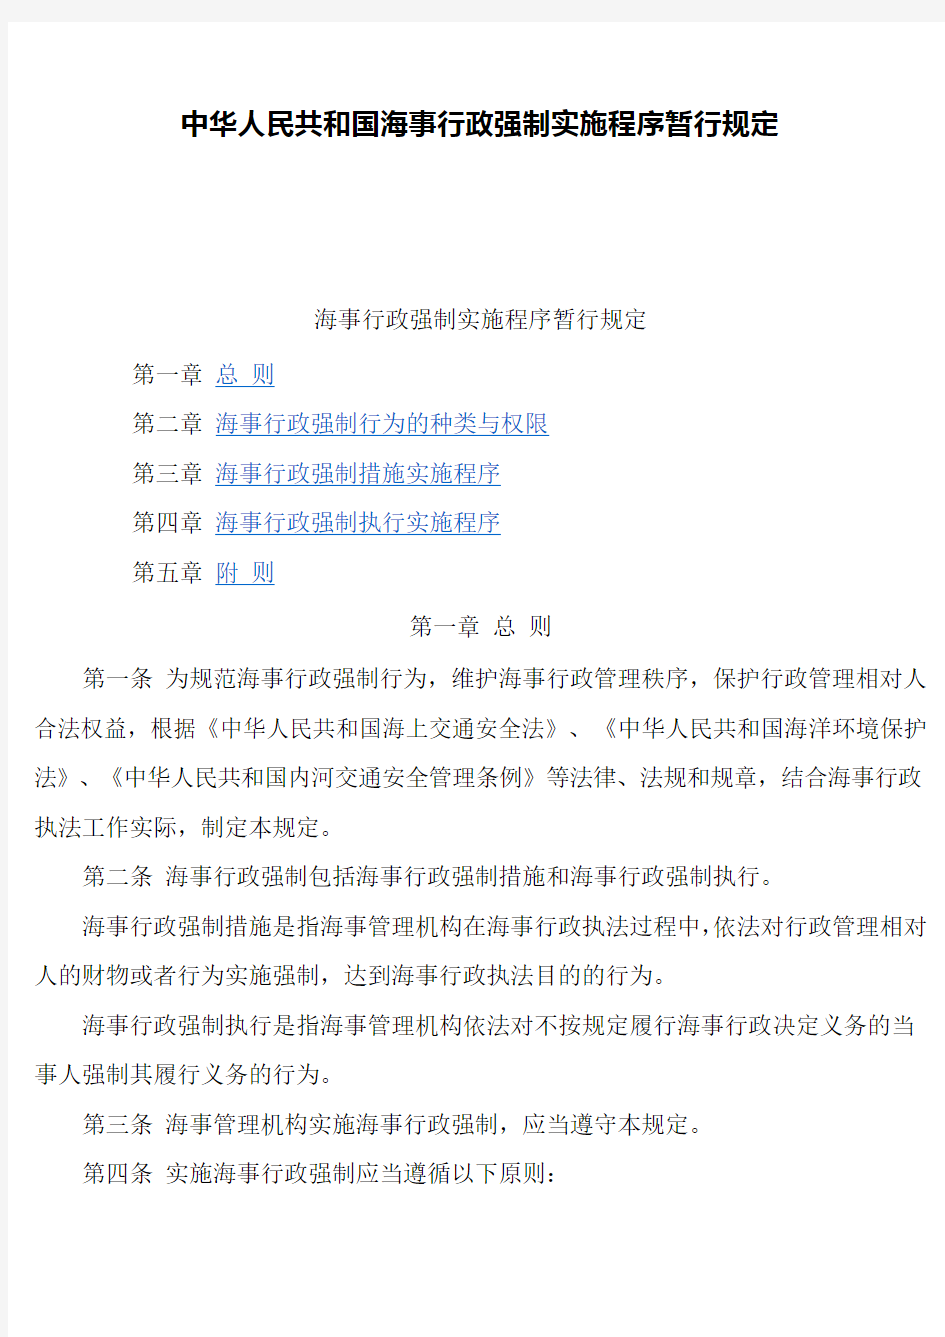 中华人民共和国海事行政强制实施程序暂行规定